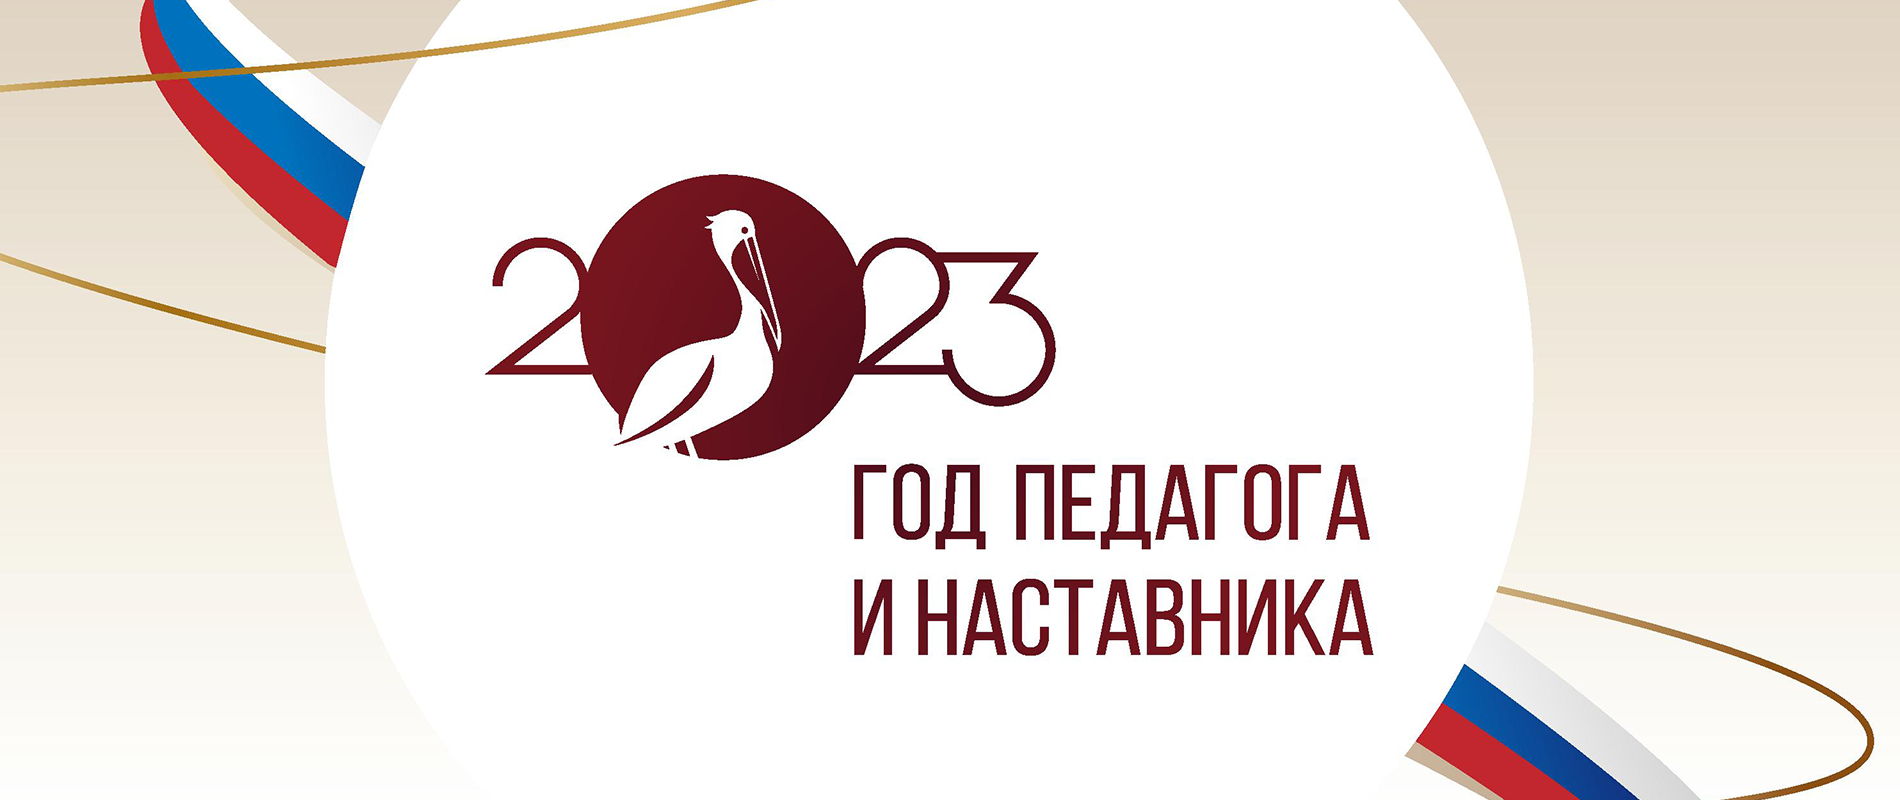 XV - Всероссийская интернет – конференция